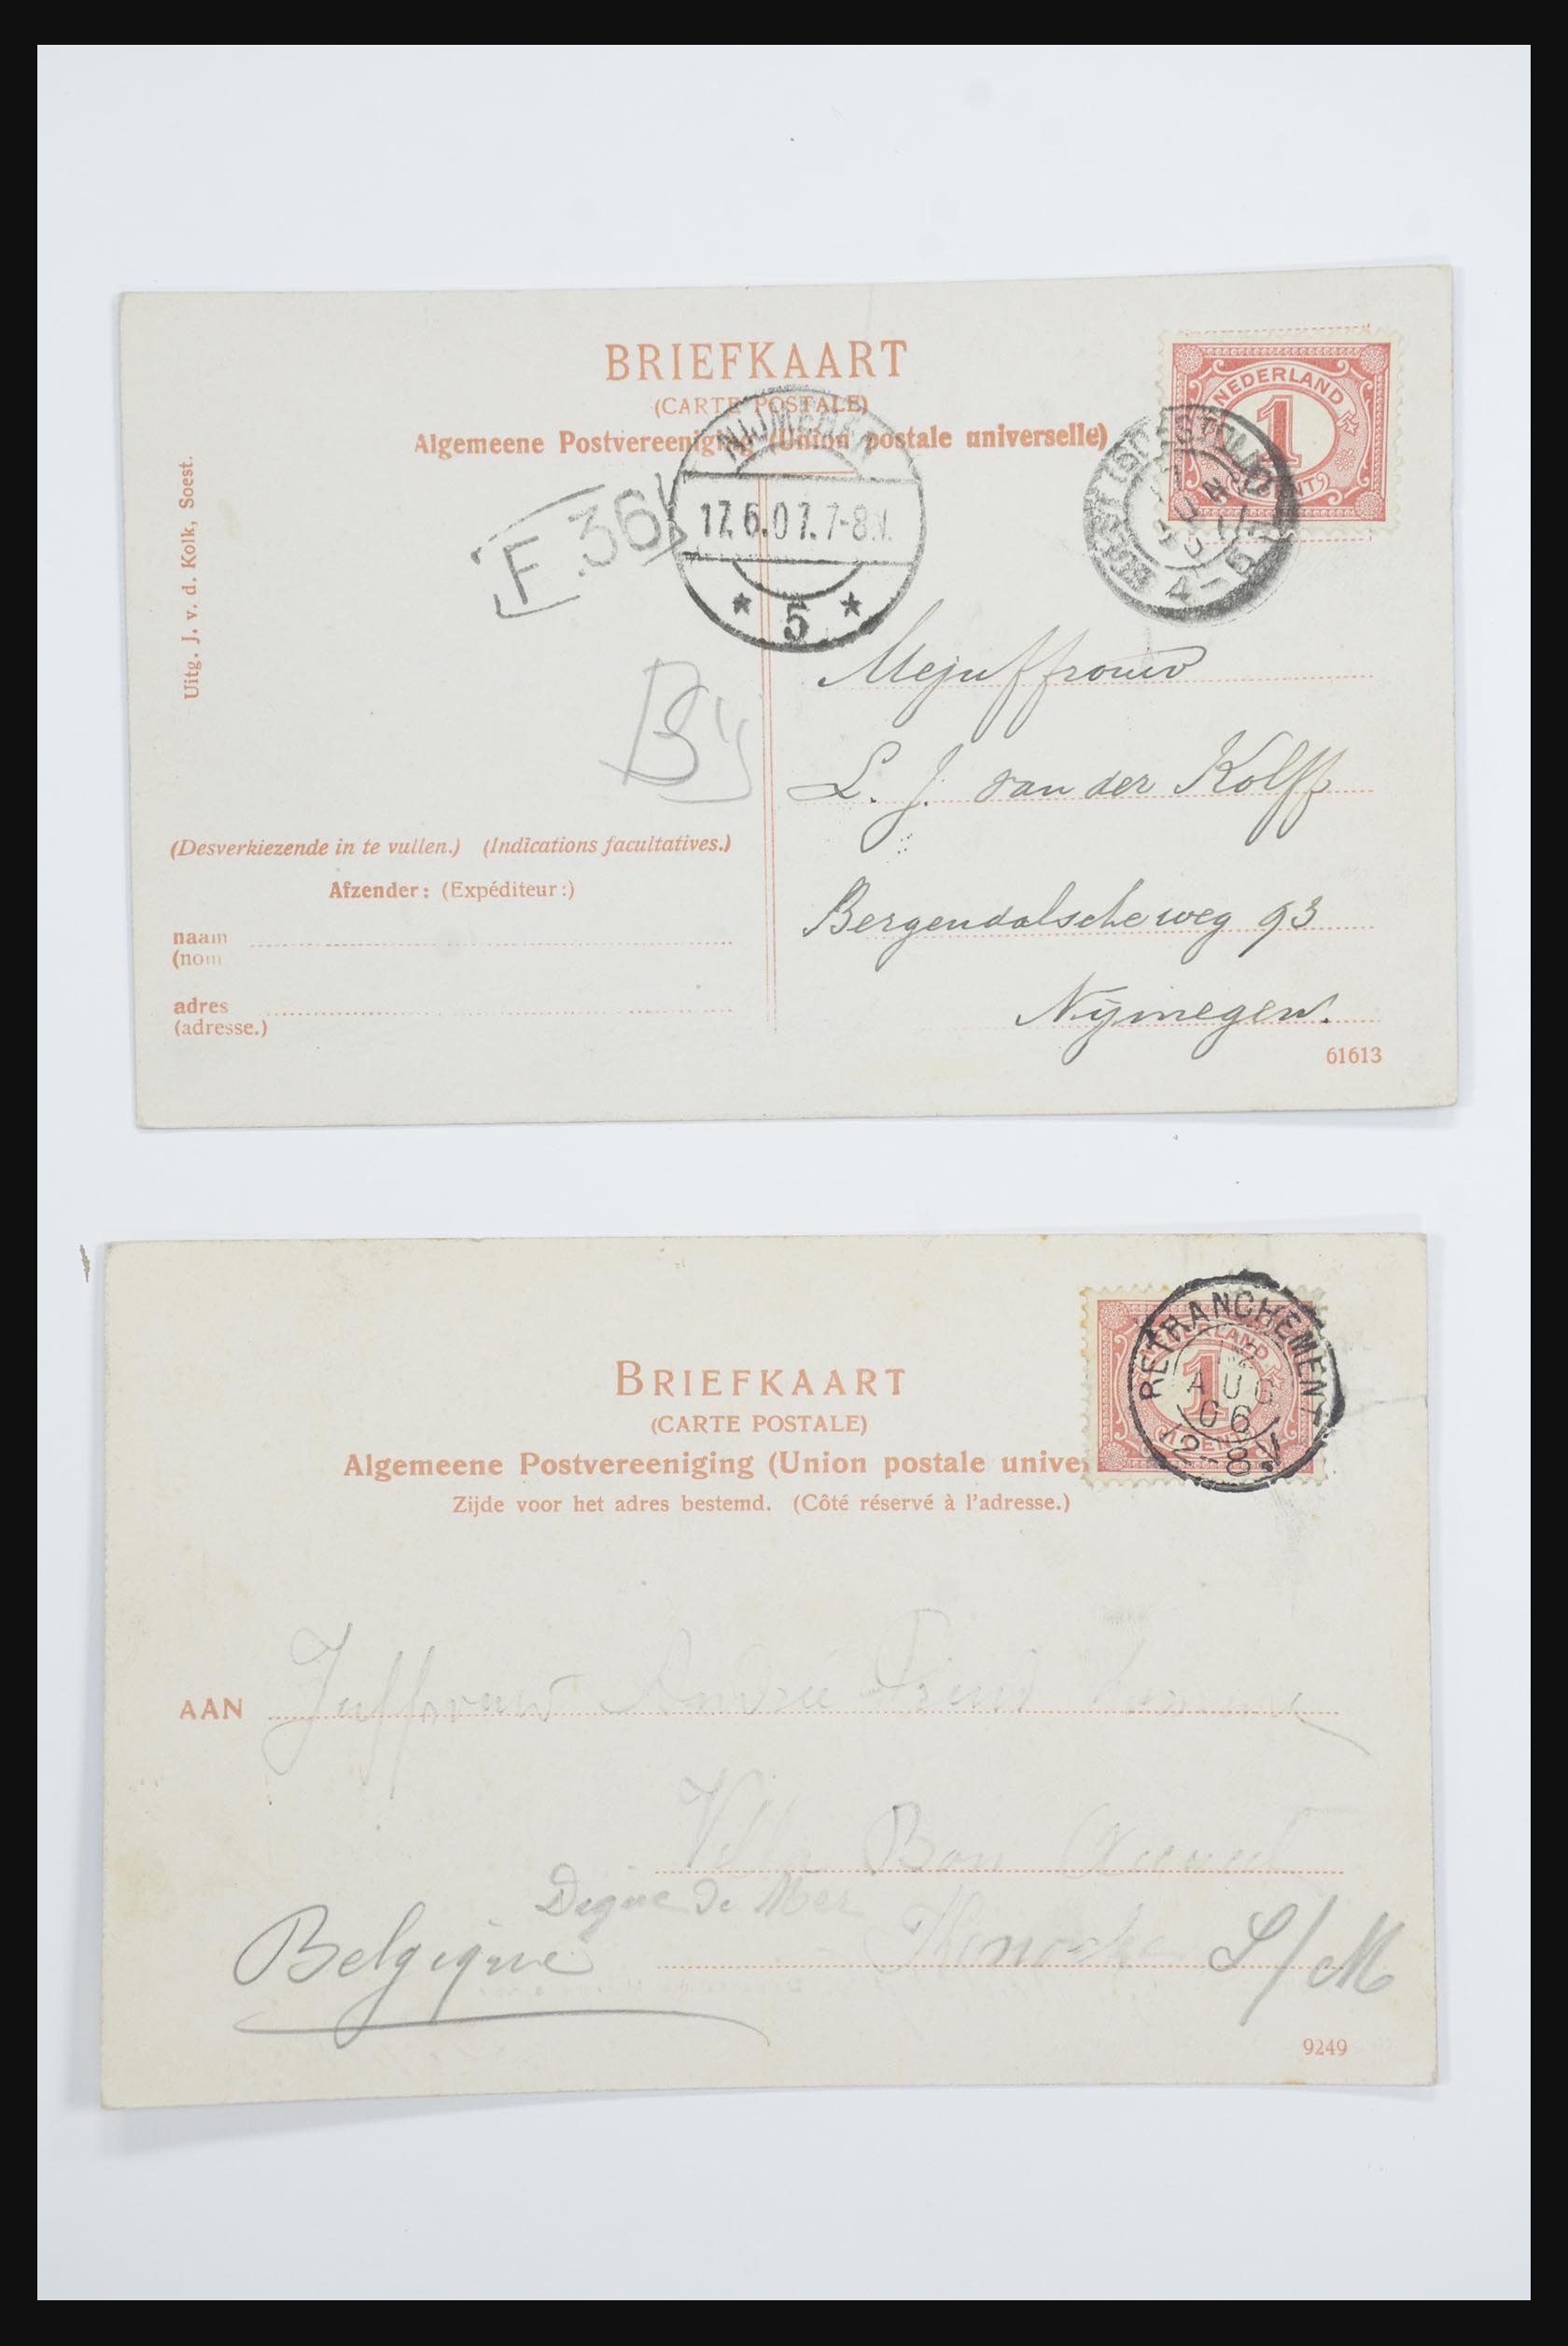 31668 061 - 31668 Nederland ansichtkaarten 1905-1935.